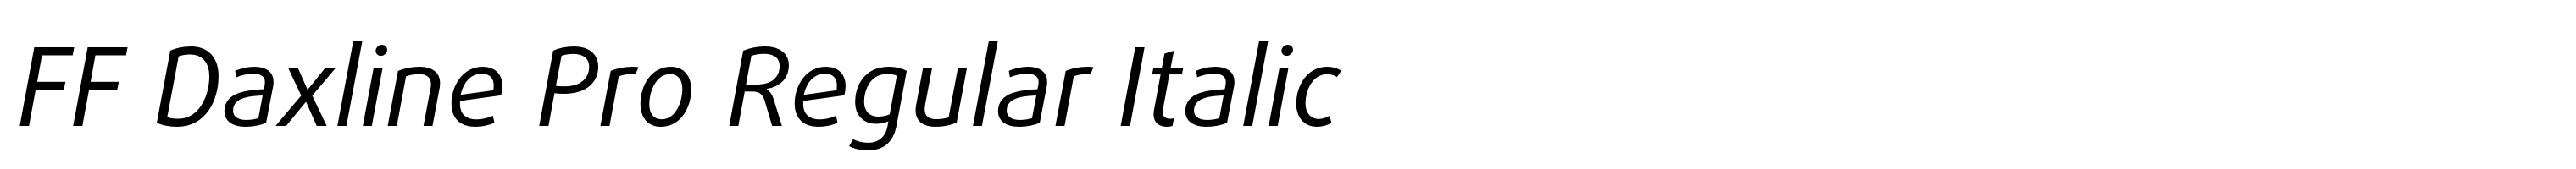 FF Daxline Pro Regular Italic